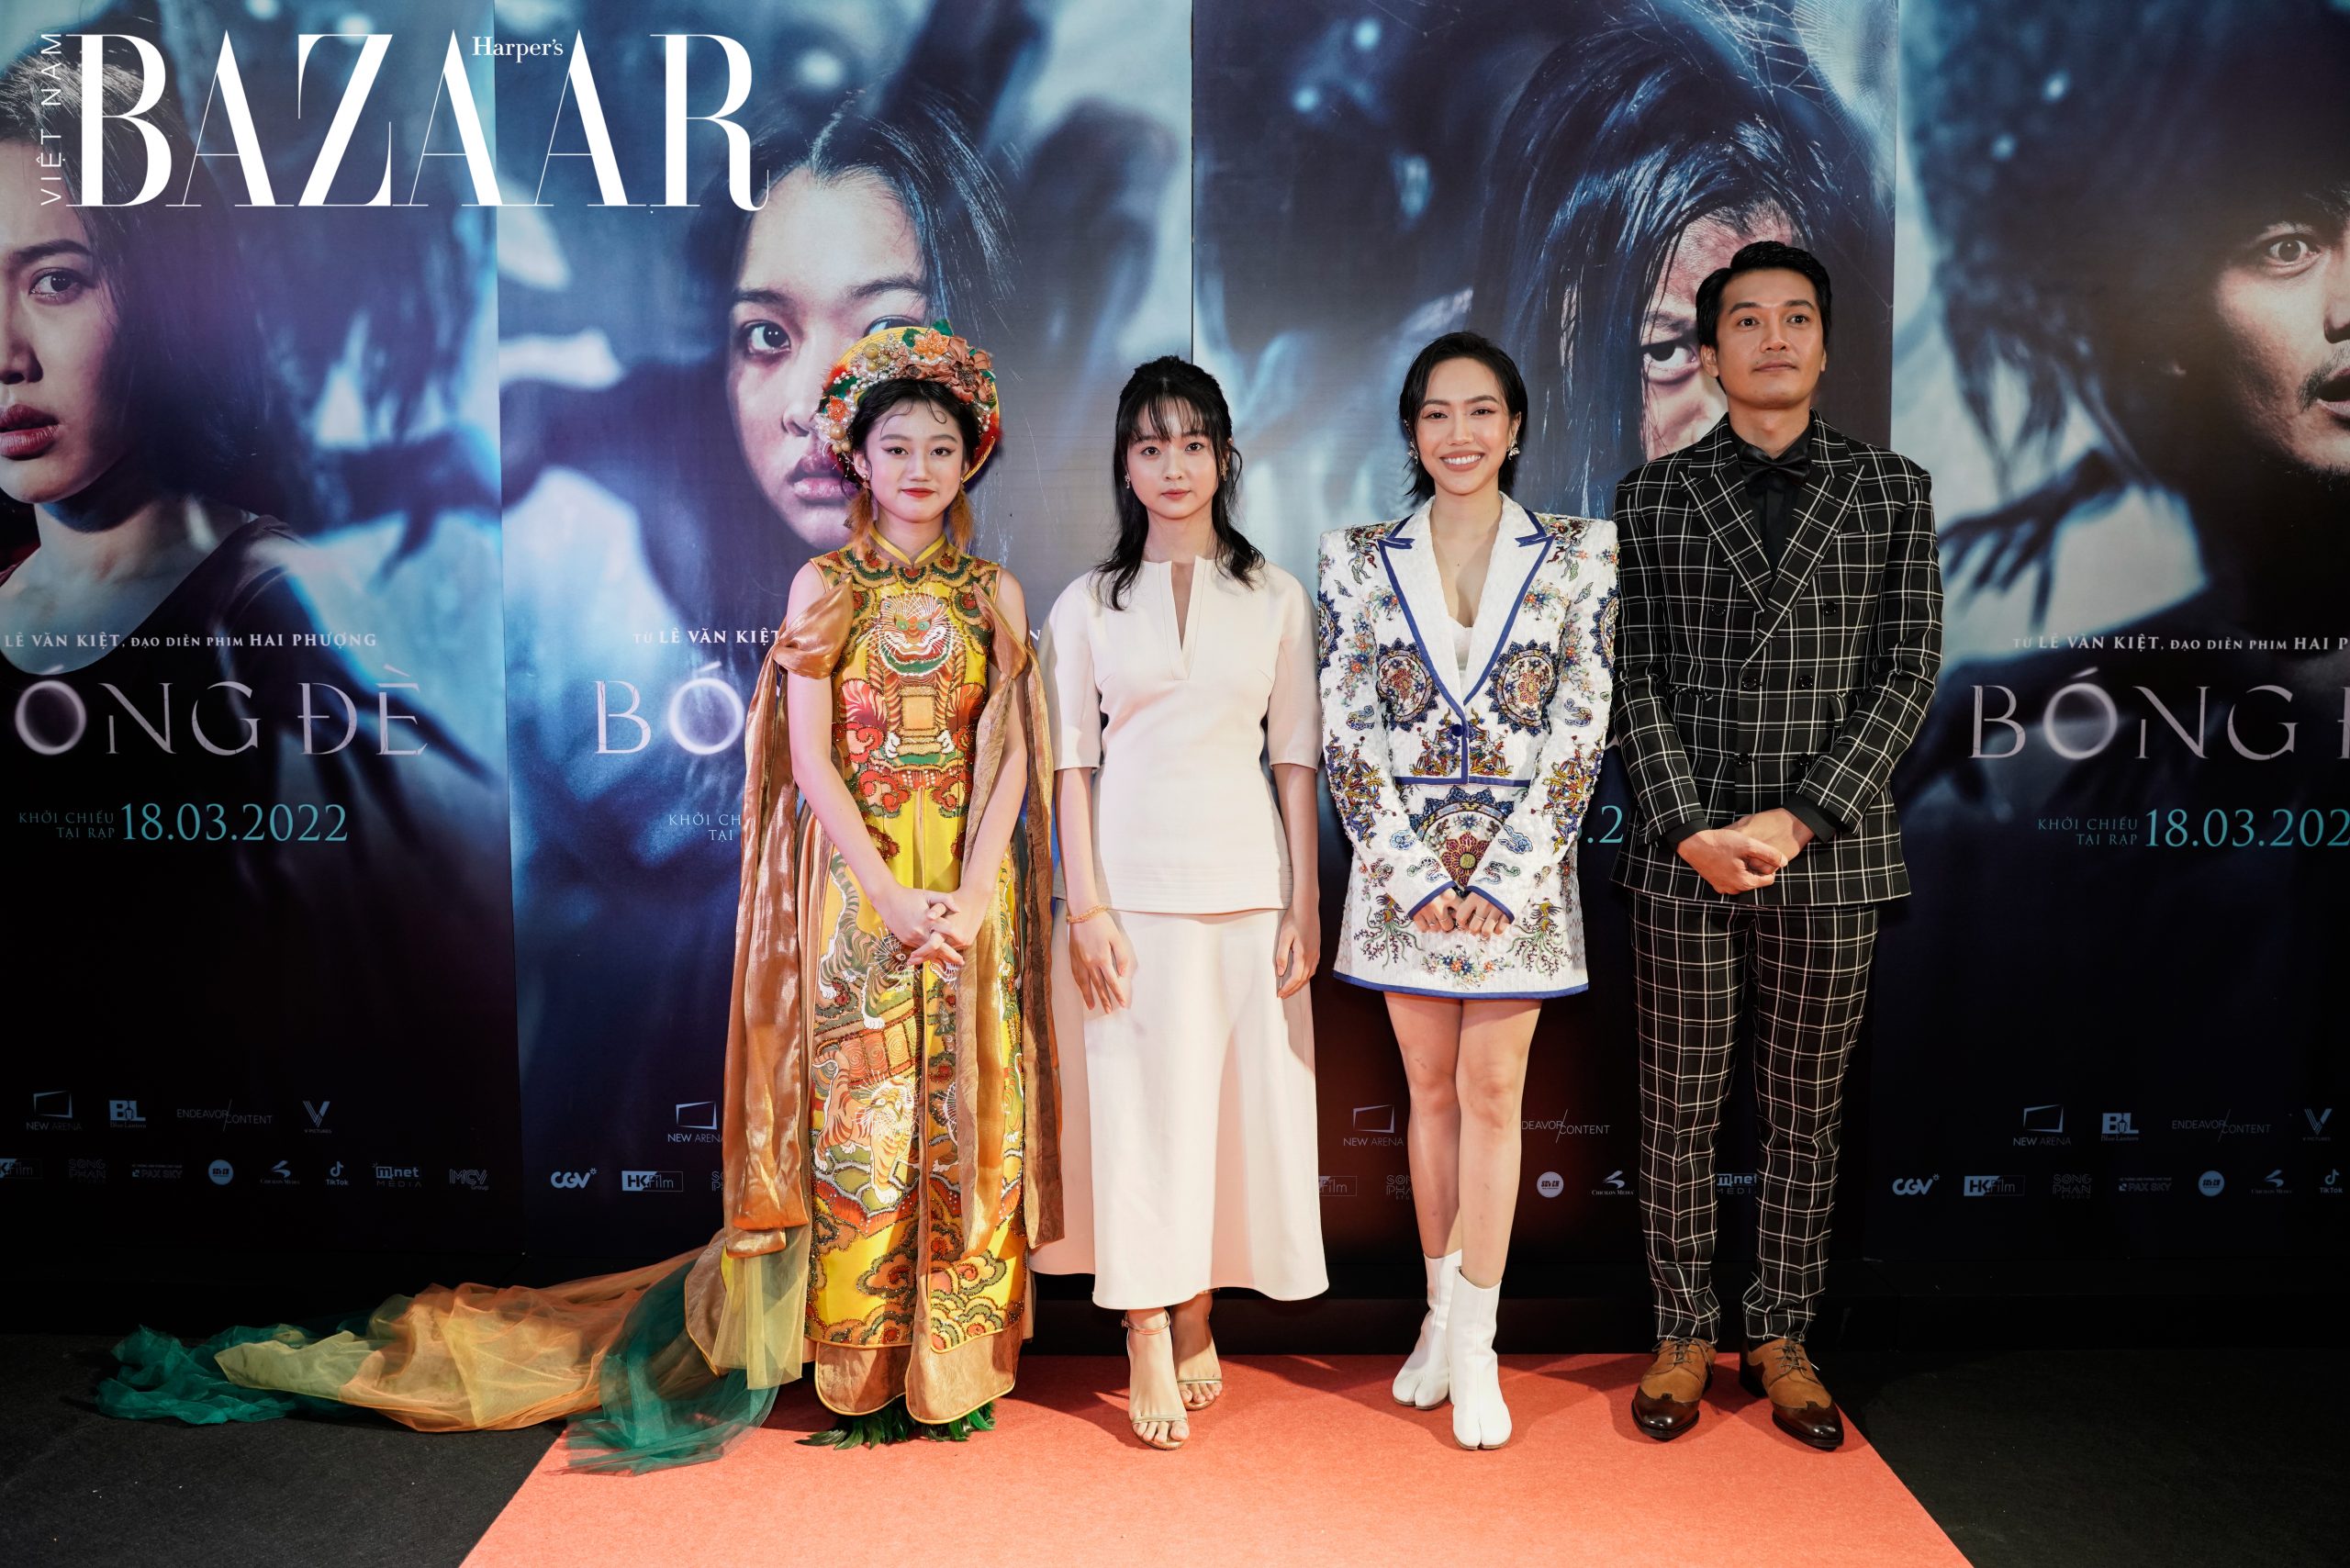 Harper's Bazaar_phim Bóng đè của đạo diễn Lê Văn Kiệt_8